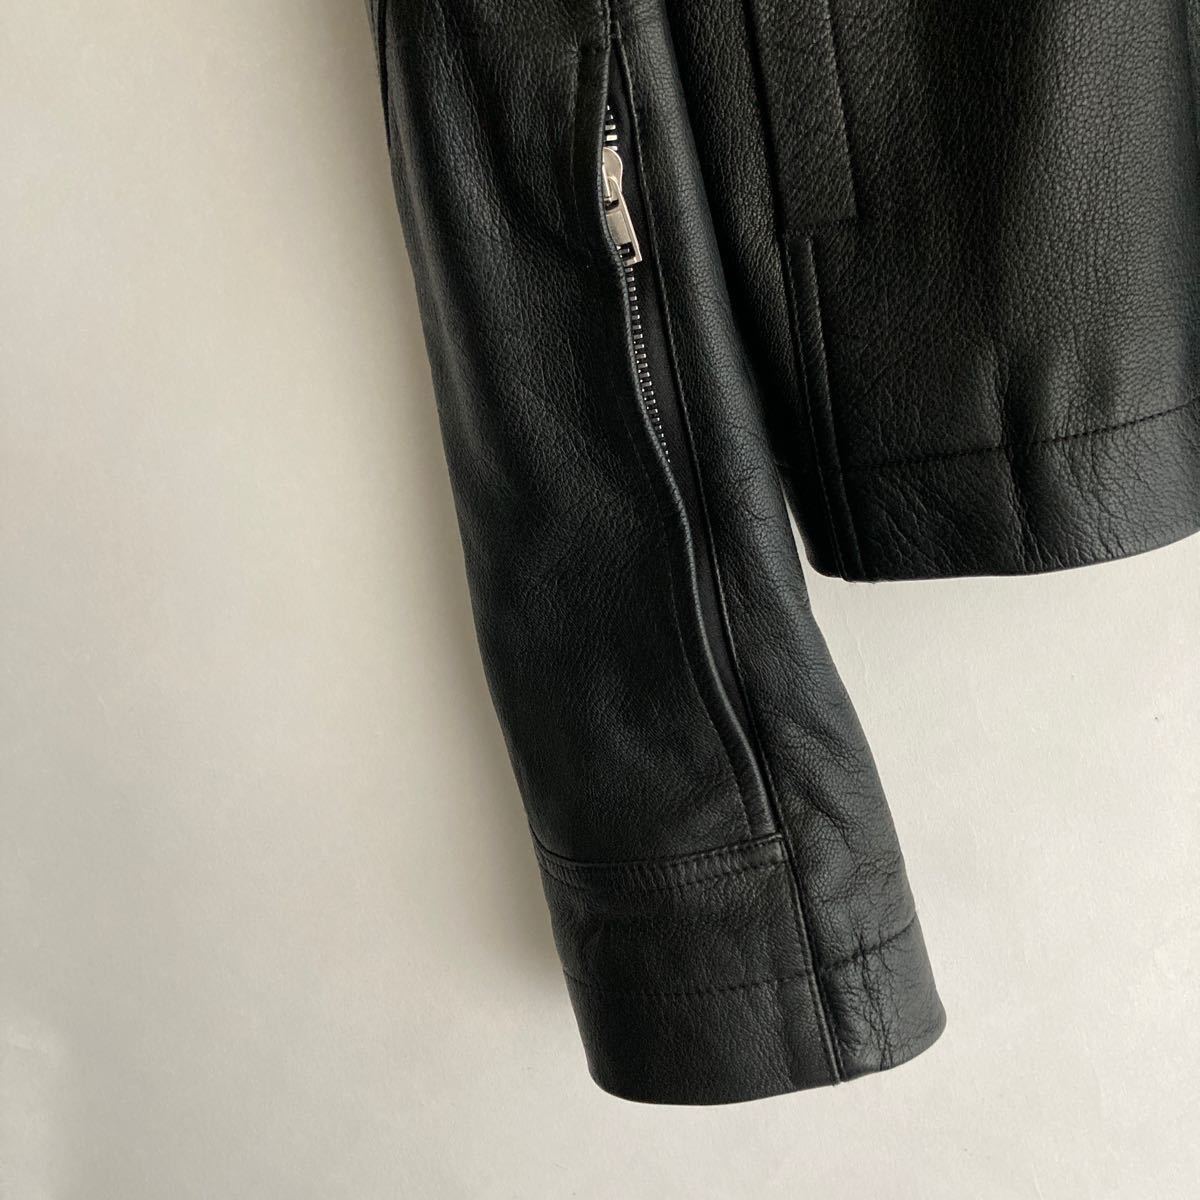 Rick Owens Rick Owens кожа байкерская куртка одиночный редкий размер довольно большой архив стандартный товар чёрный черный size 52